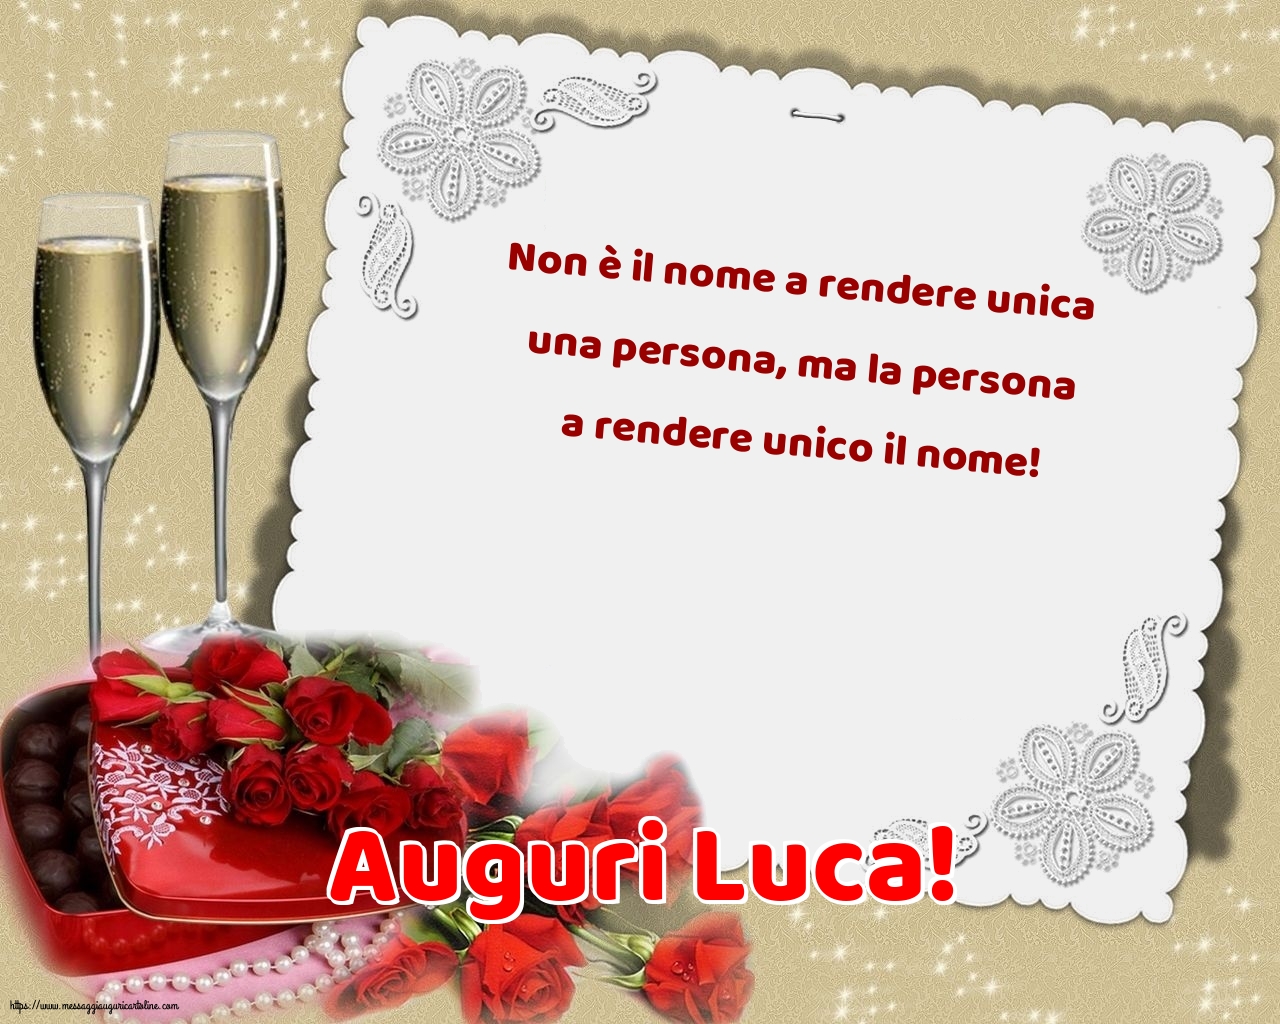 Auguri Luca!